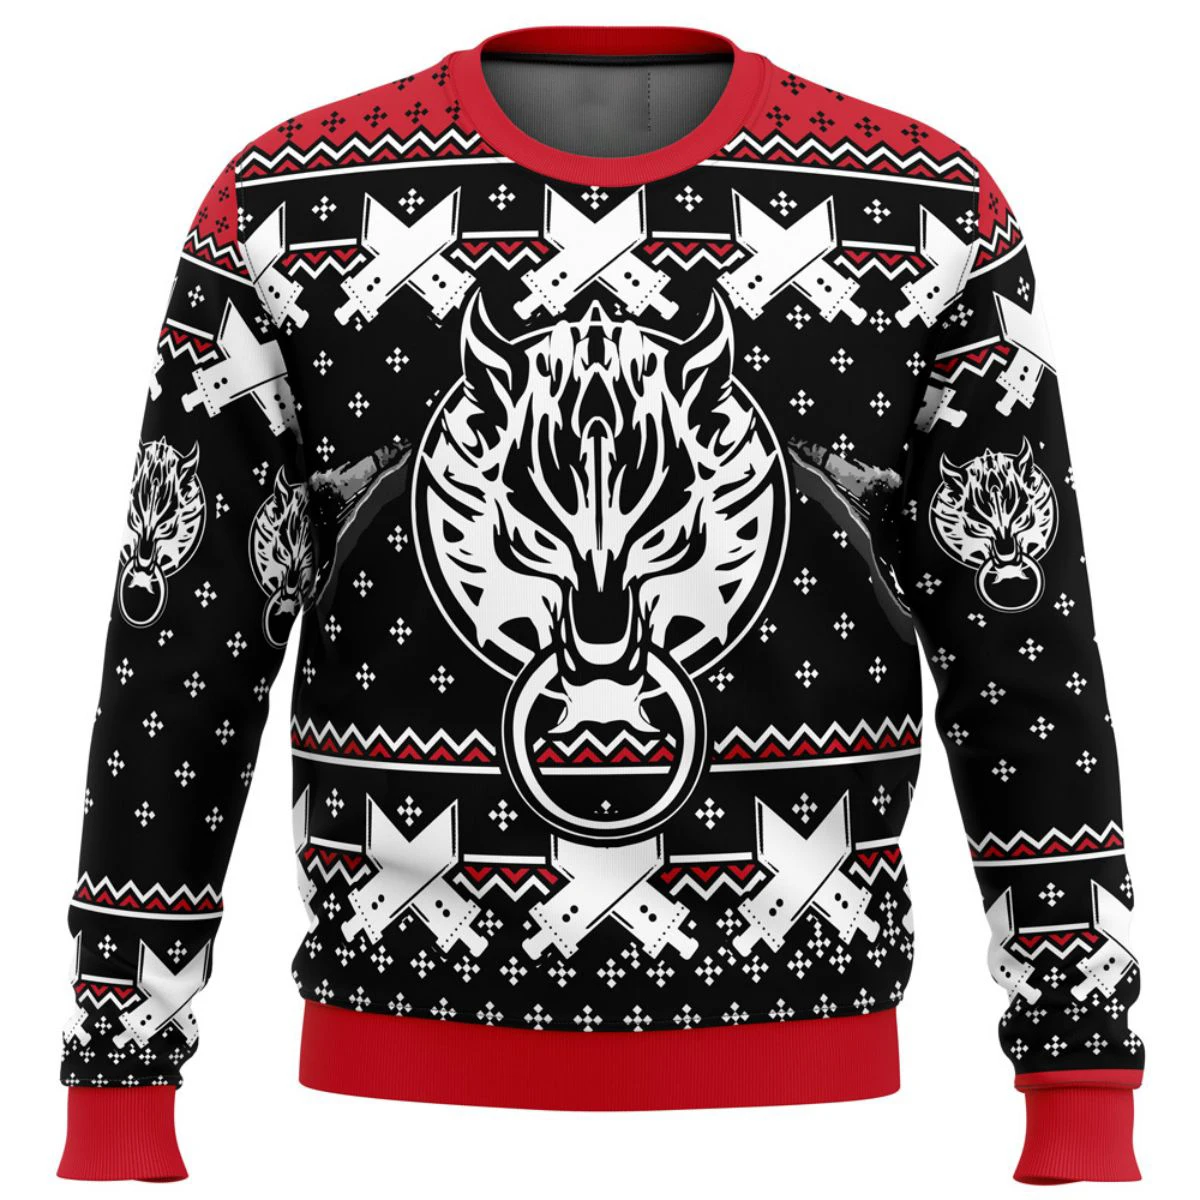 

Классический 8-битный Уродливый Рождественский свитер финальная фантазия, подарок, пуловер с Санта-Клаусом, Мужская трехмерная Толстовка и топ, осенне-зимняя одежда